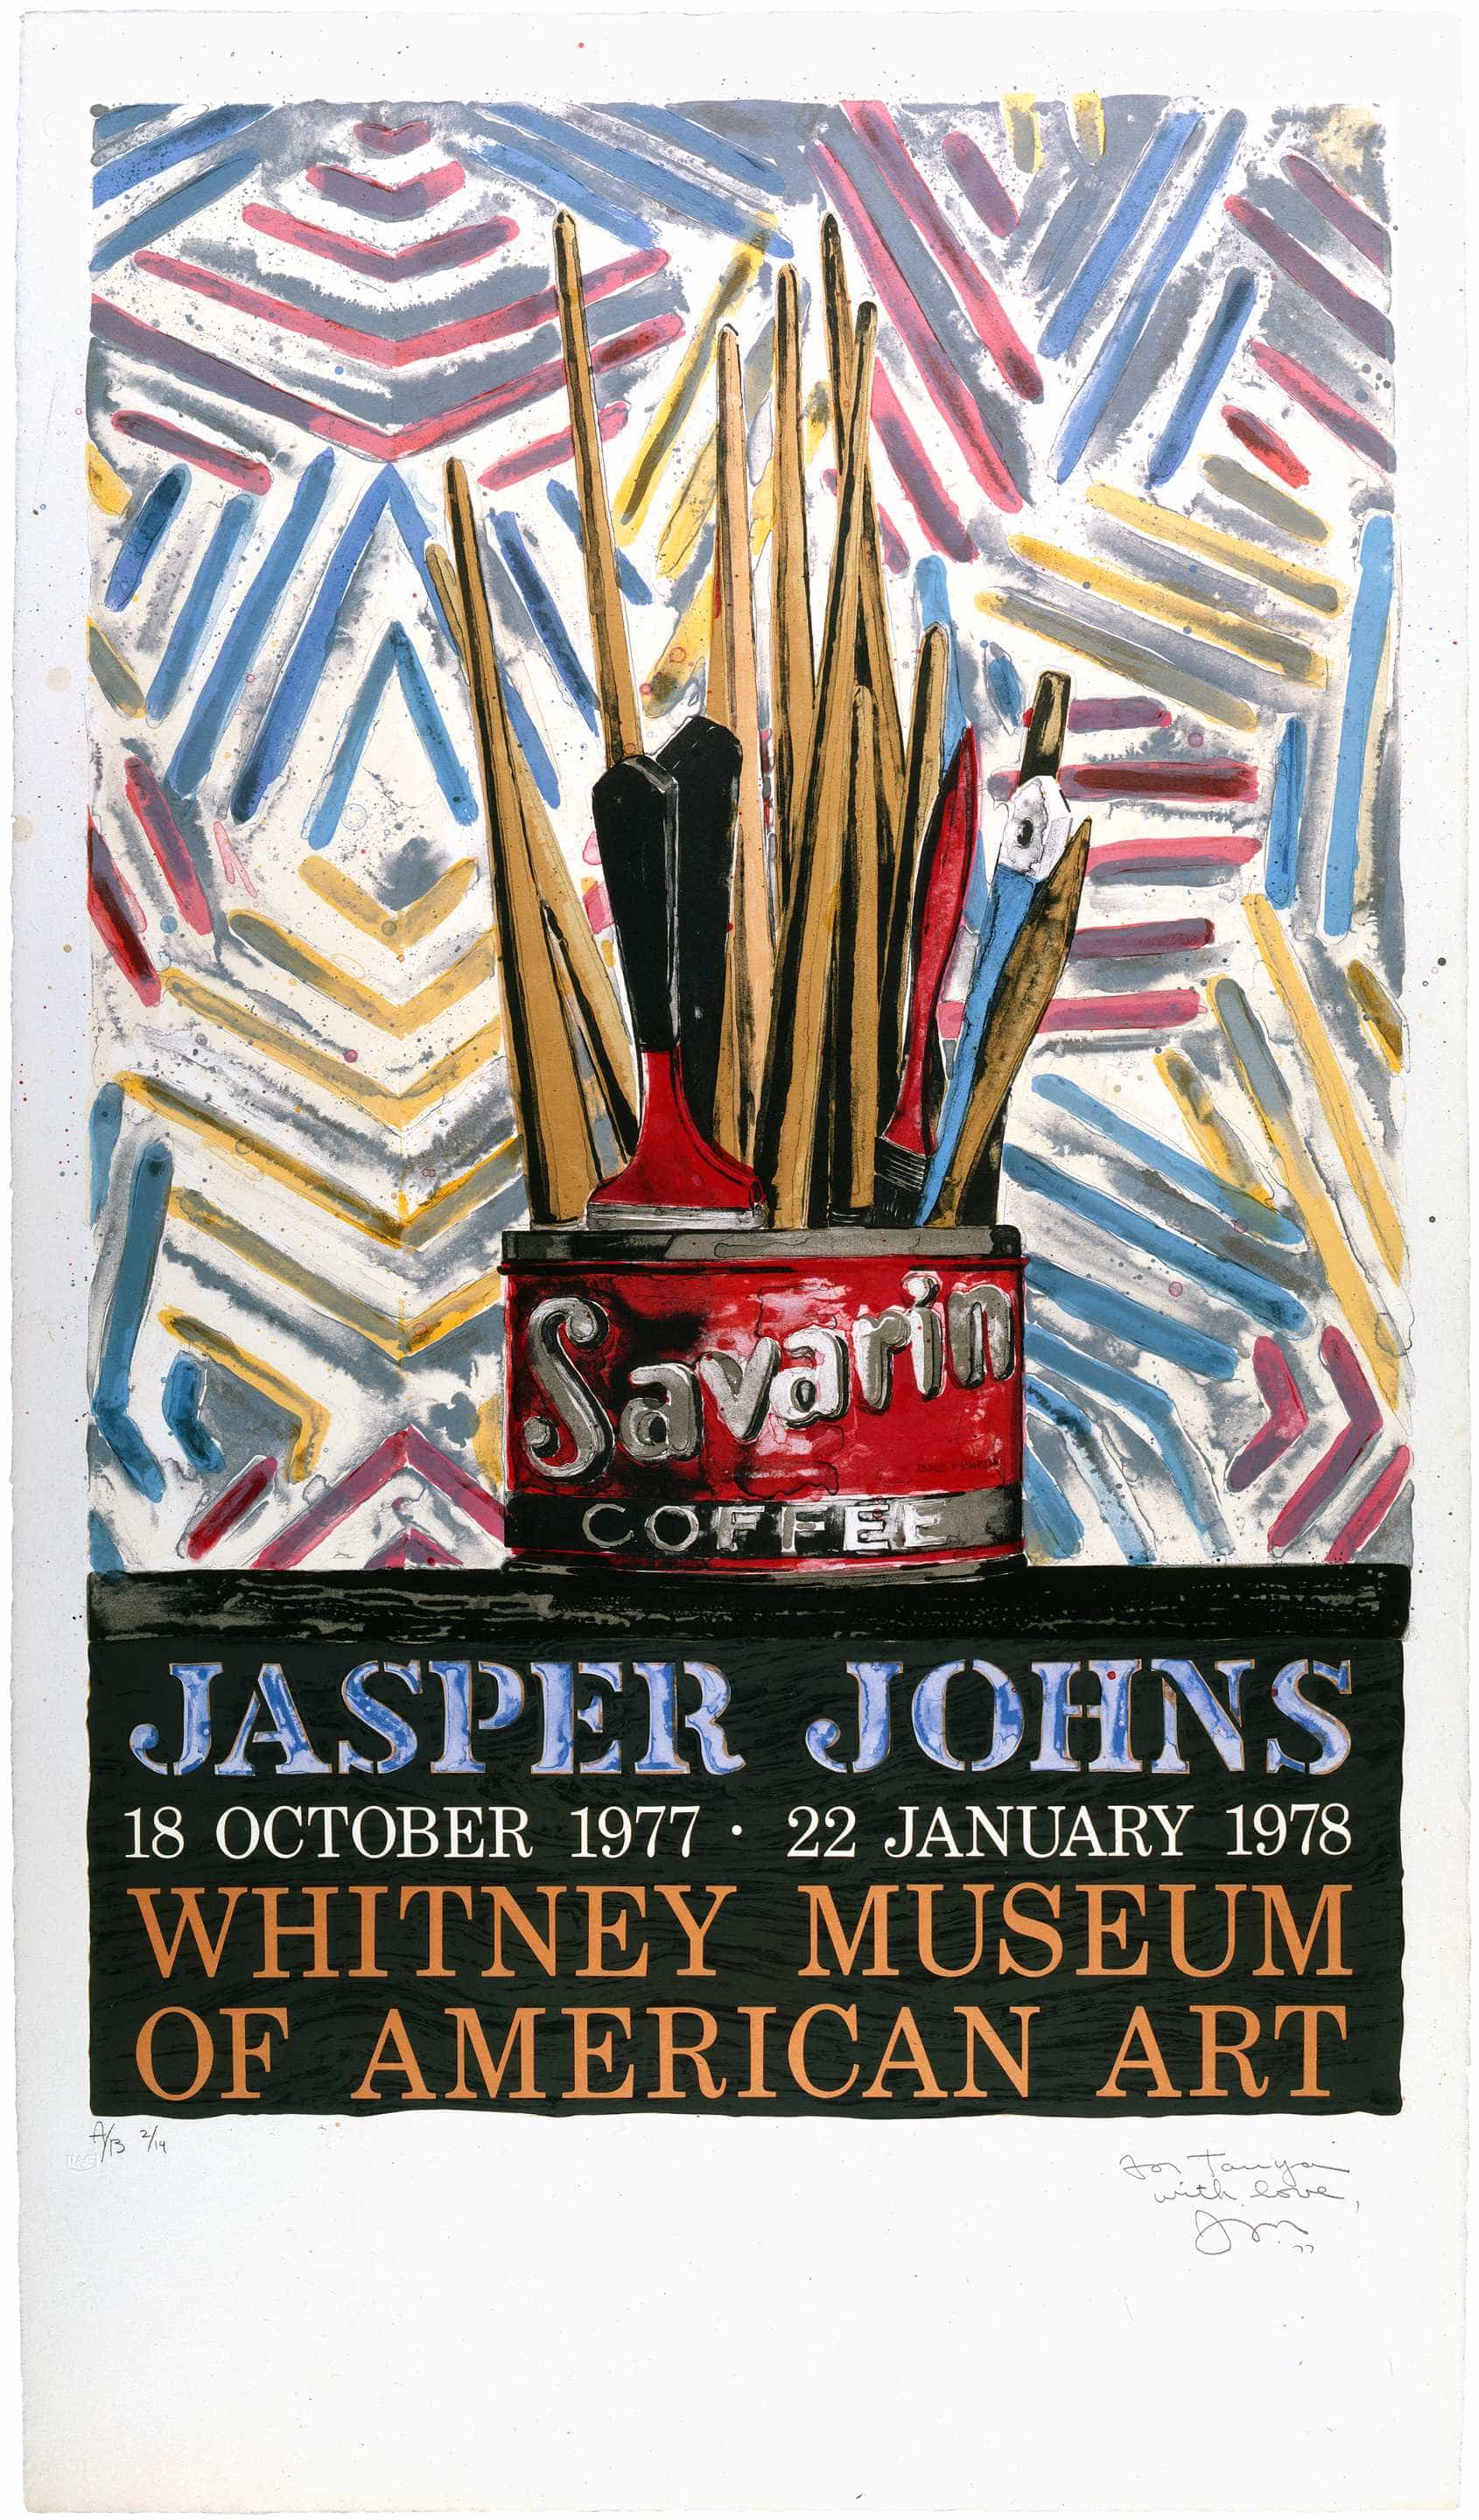 Jasper Johns, Savarin, 1977